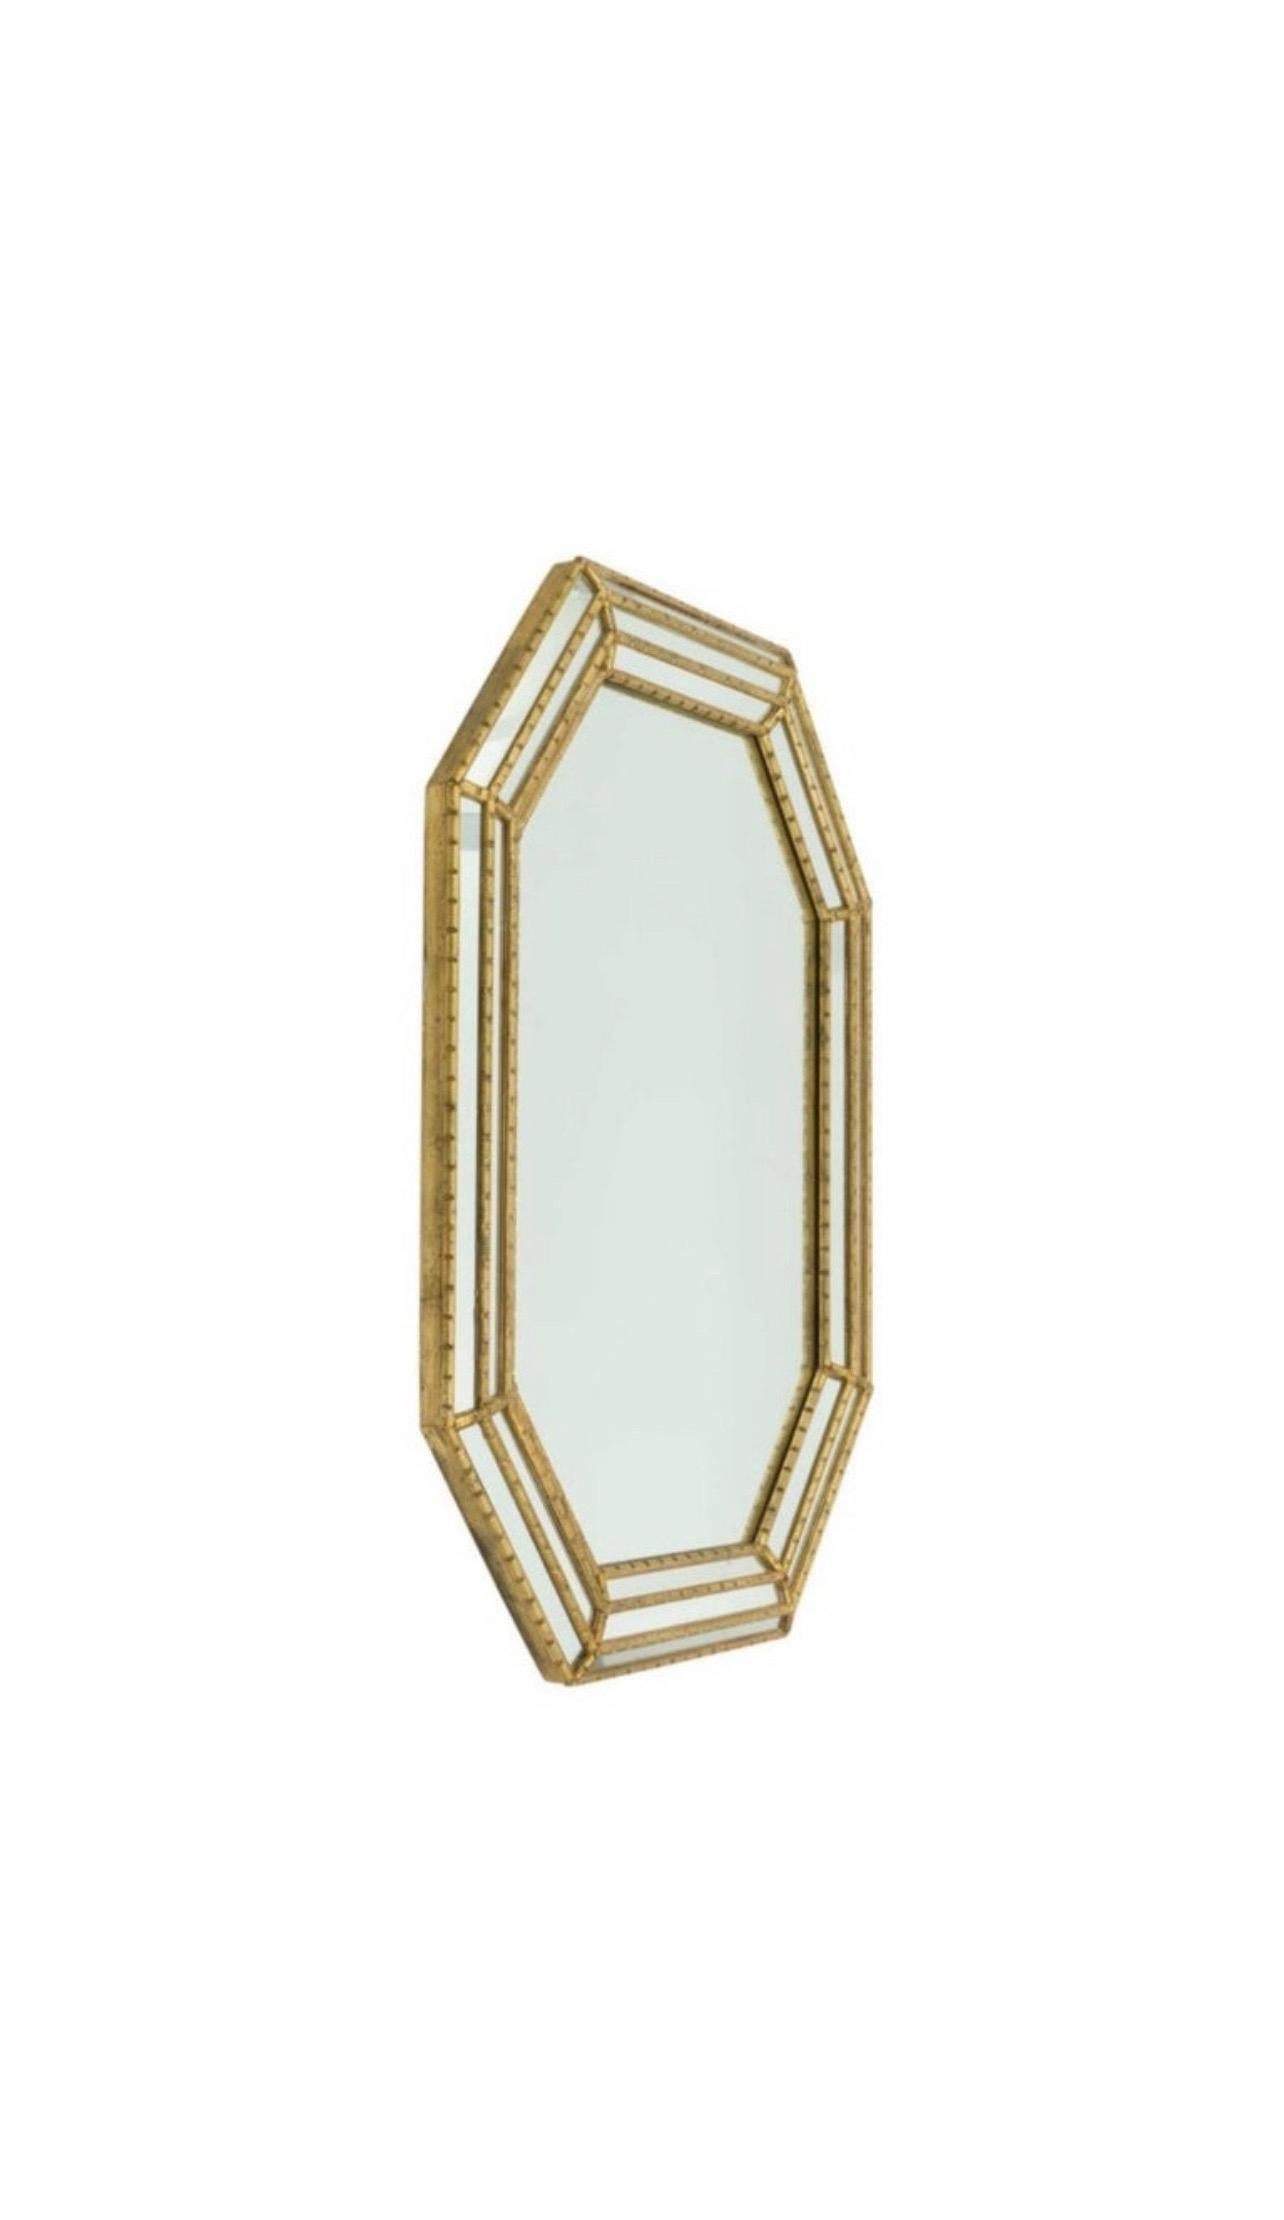 Miroir octogonal doré encadré par Labarge avec un cadre dentelé de style faux bambou et des panneaux miroirs encastrés. 

USA, vers 1980.

Dimensions : 42,25